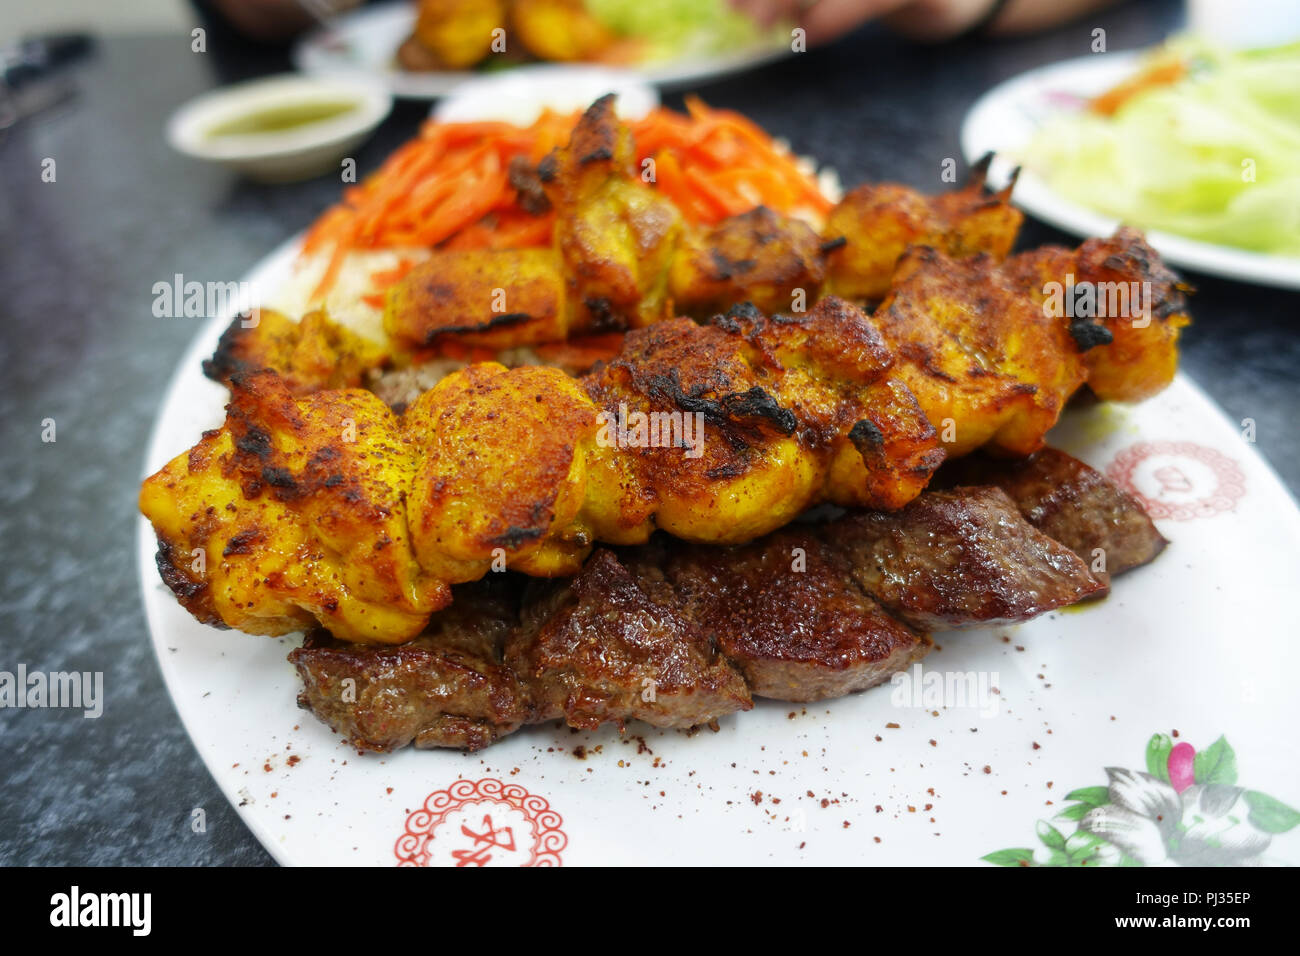 La nourriture afghane, de l'agneau grillé et brochette de poulet Banque D'Images